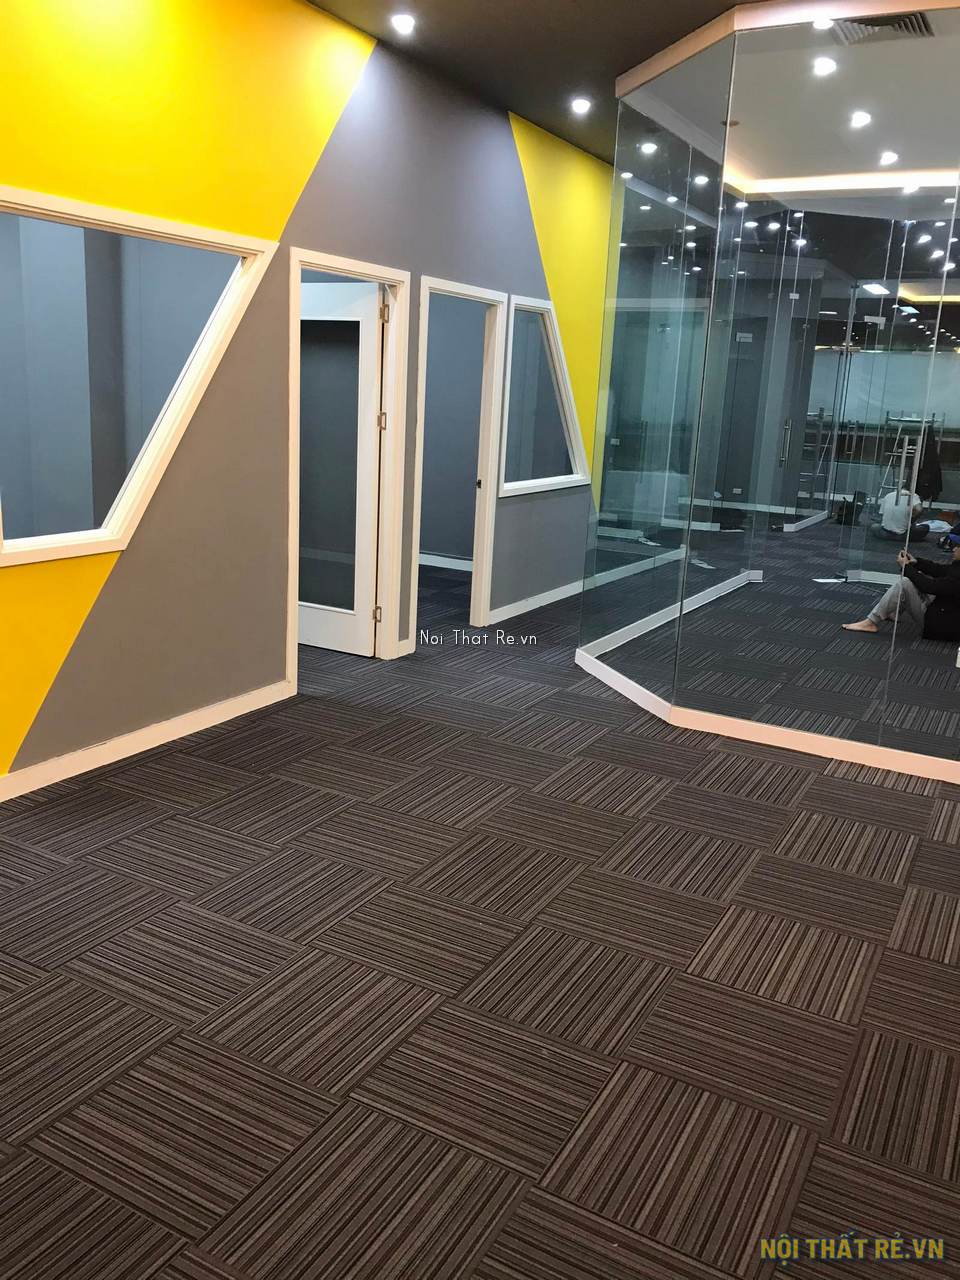 Văn phòng hiện đại sơn màu vàng ghi, sử dụng thảm tấm ghép DK